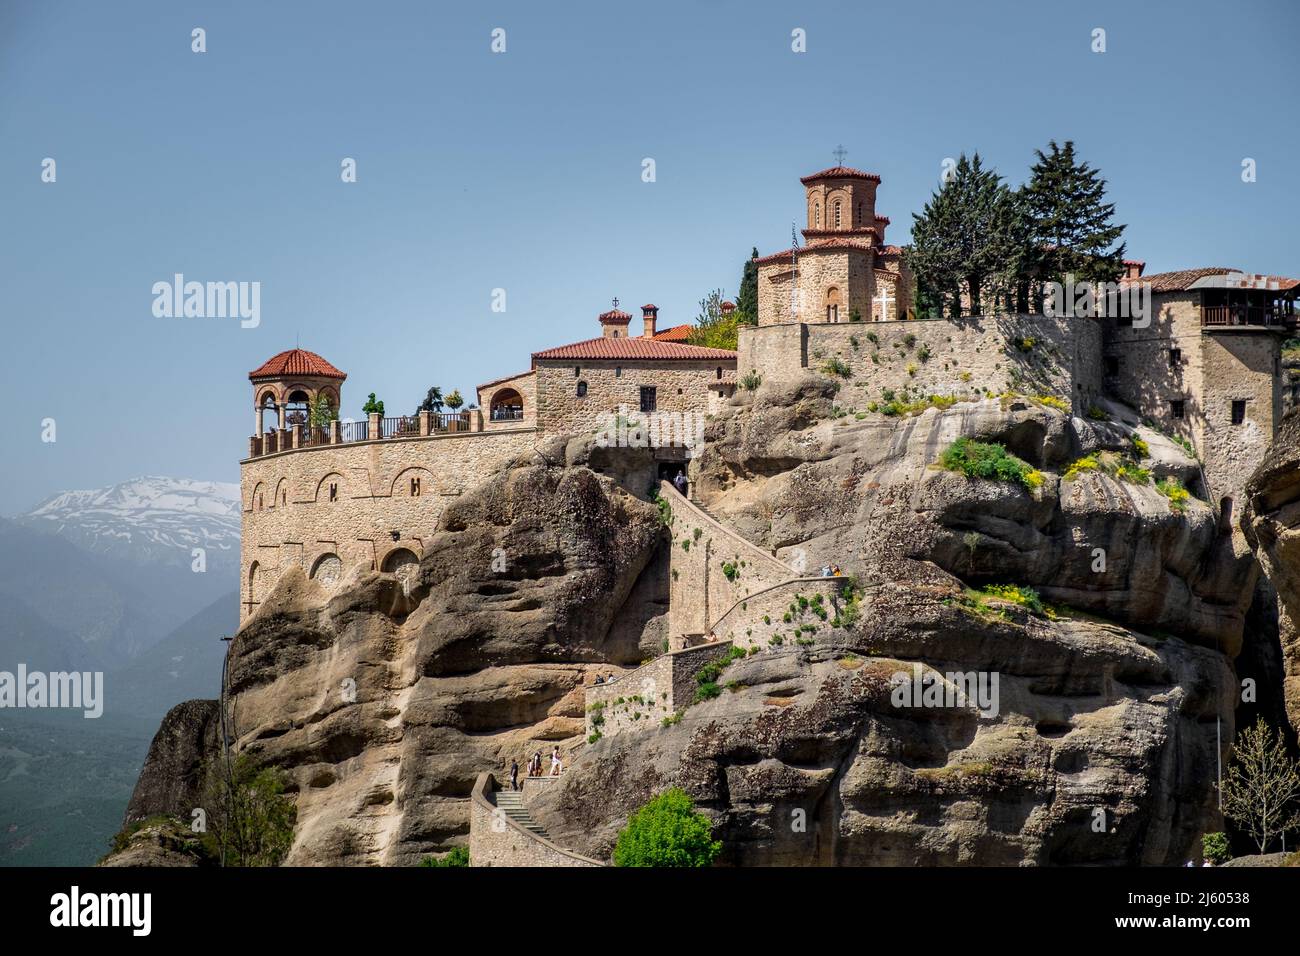 Paysage de monastères grecs orthodoxes sur le sommet de rochers escarpés Banque D'Images